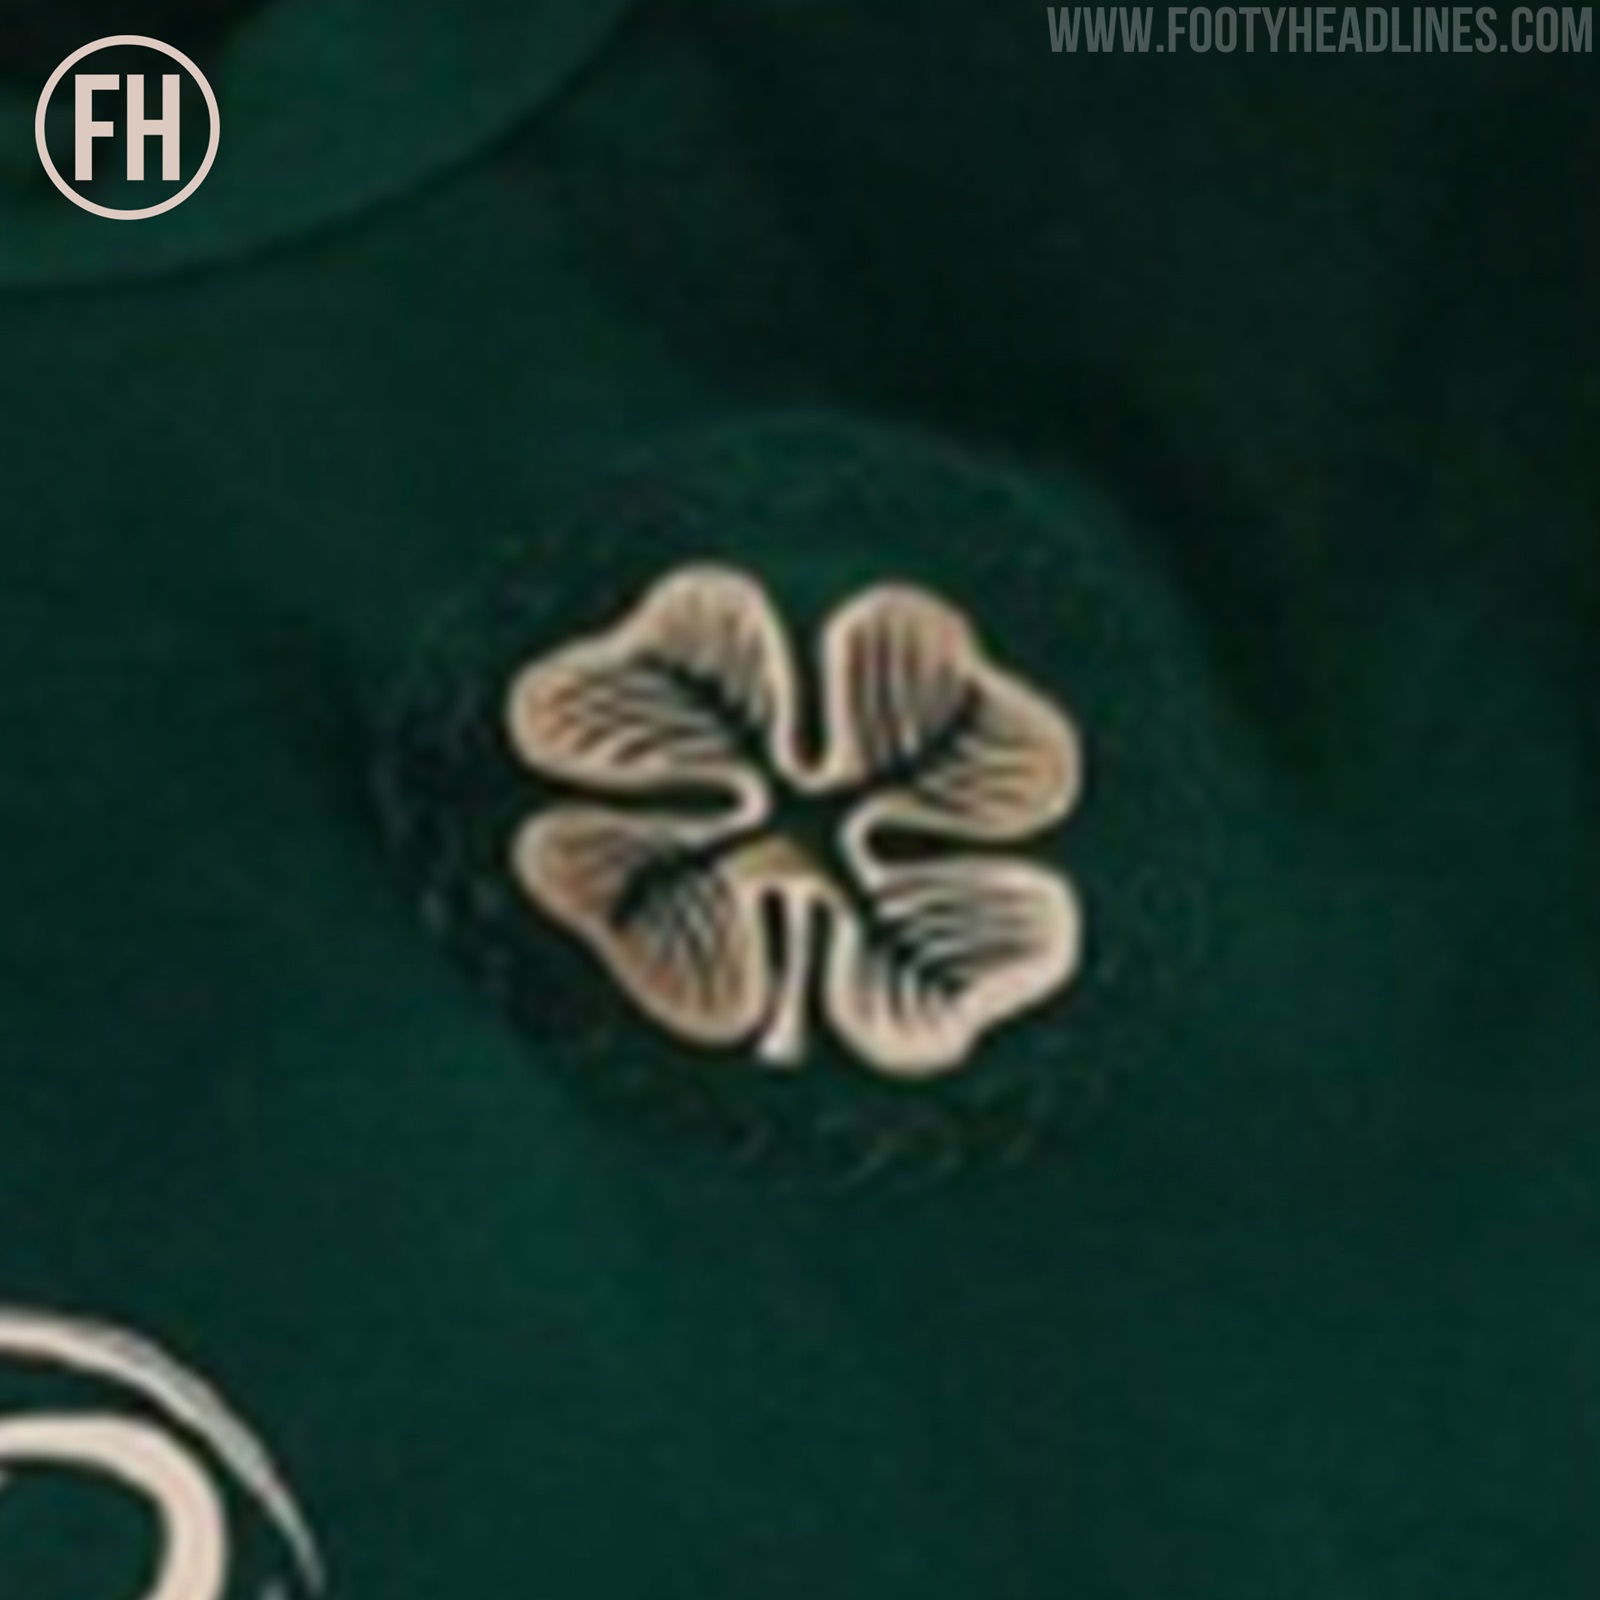 Celtic 21-22 Third Kit Leaked - Footy Headlines